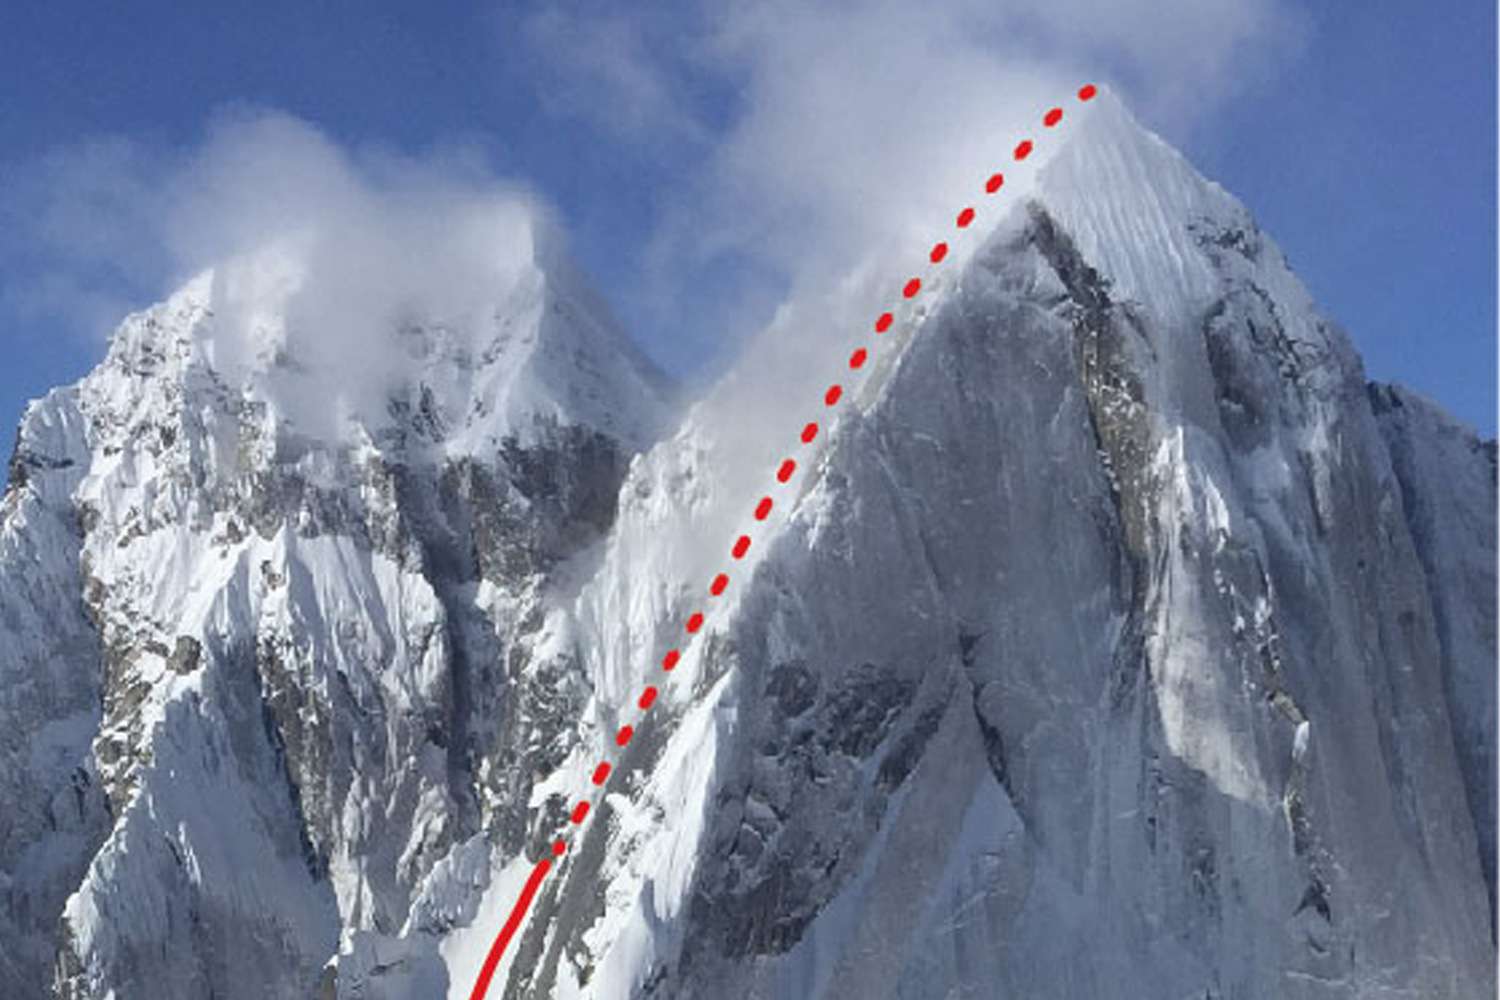 Climber Dead After 2-Person Team Falls 1,000 Feet Off Alaska Mountain [Video]